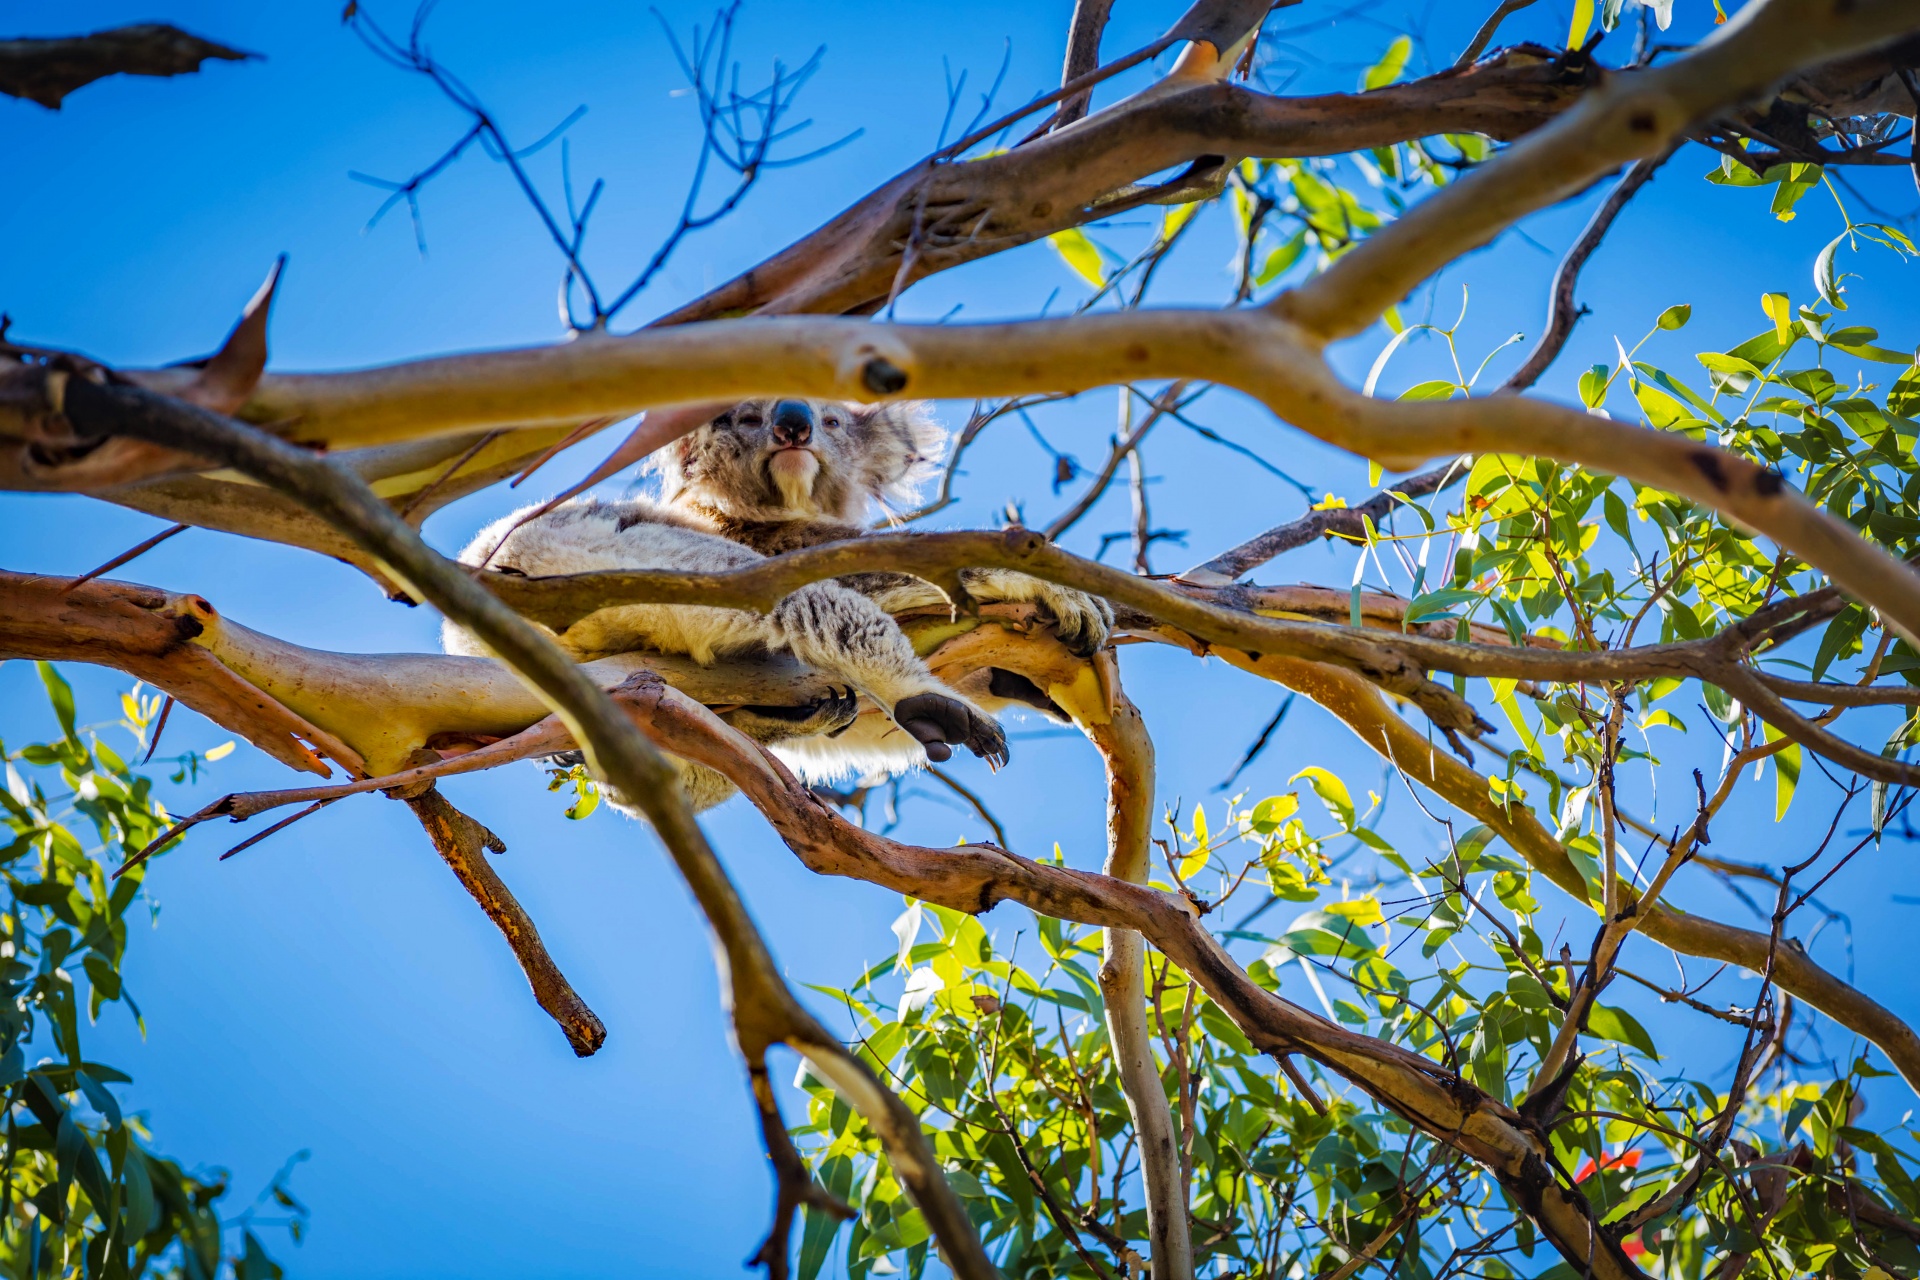 Koala in bush australiano